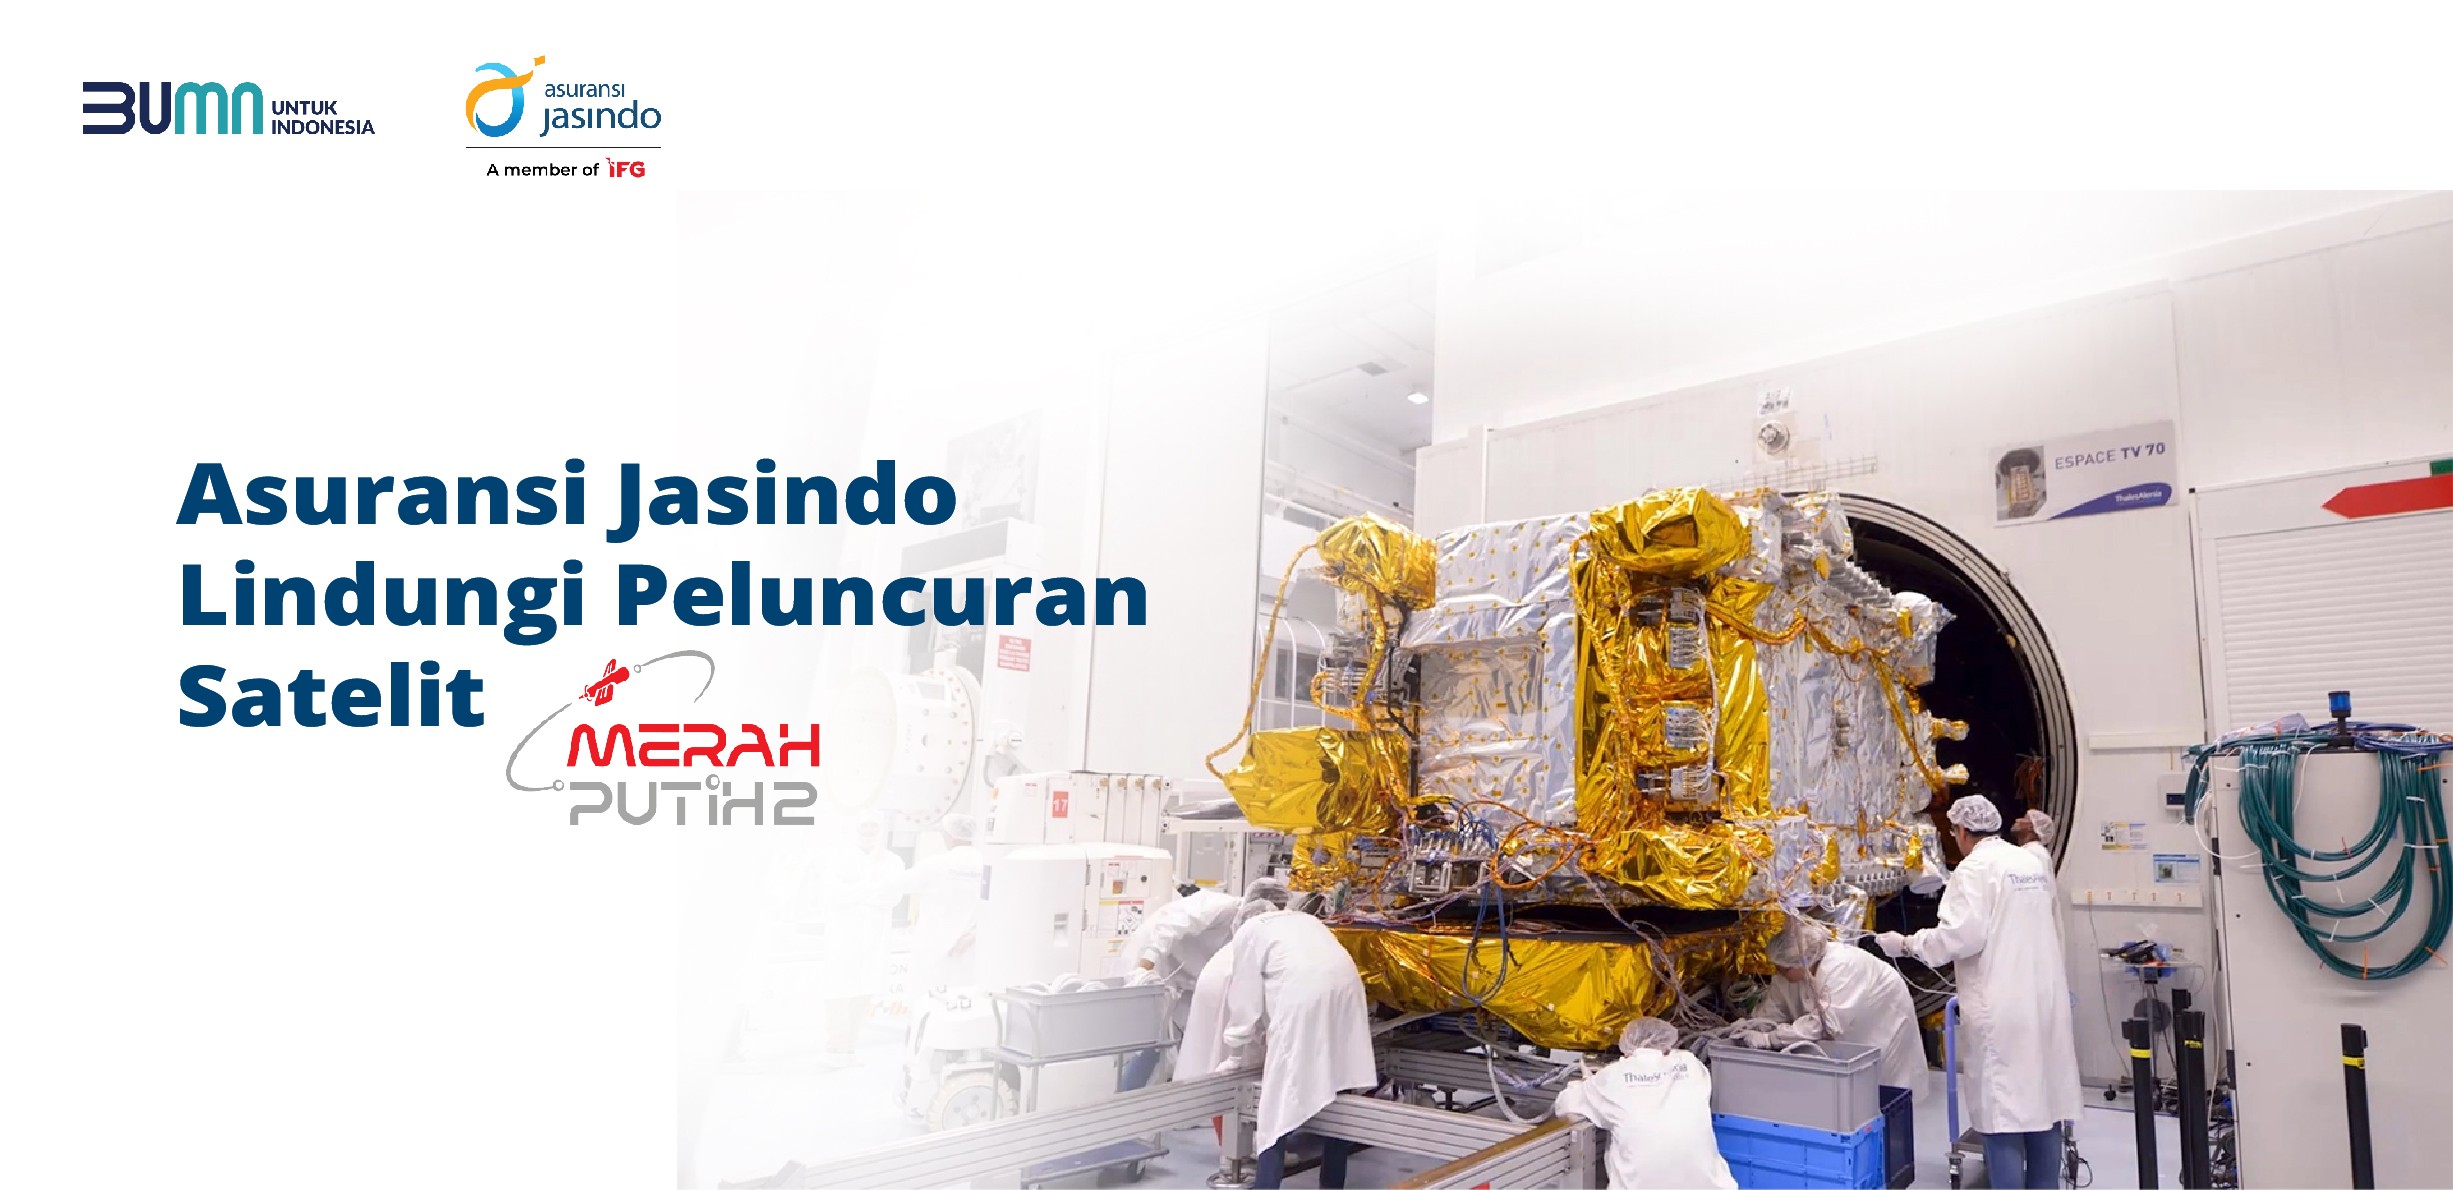 Asuransi Jasindo Lindungi Peluncuran Satelit Merah Putih 2